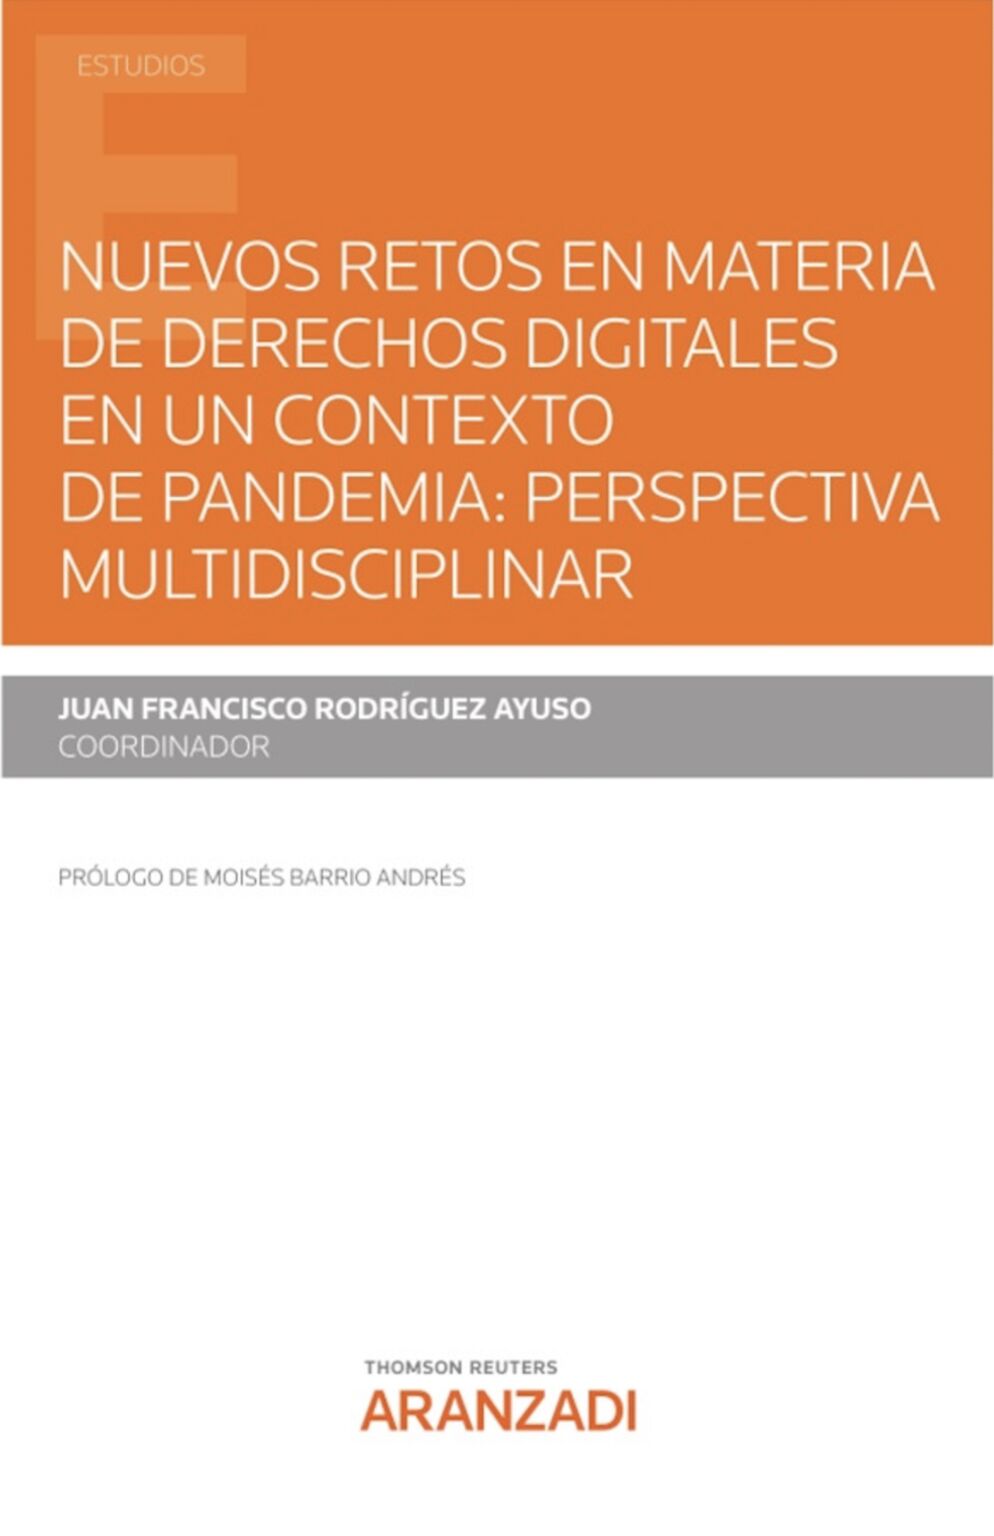 Imagen de portada del libro Nuevos retos en materia de derechos digitales en un contexto de pandemia